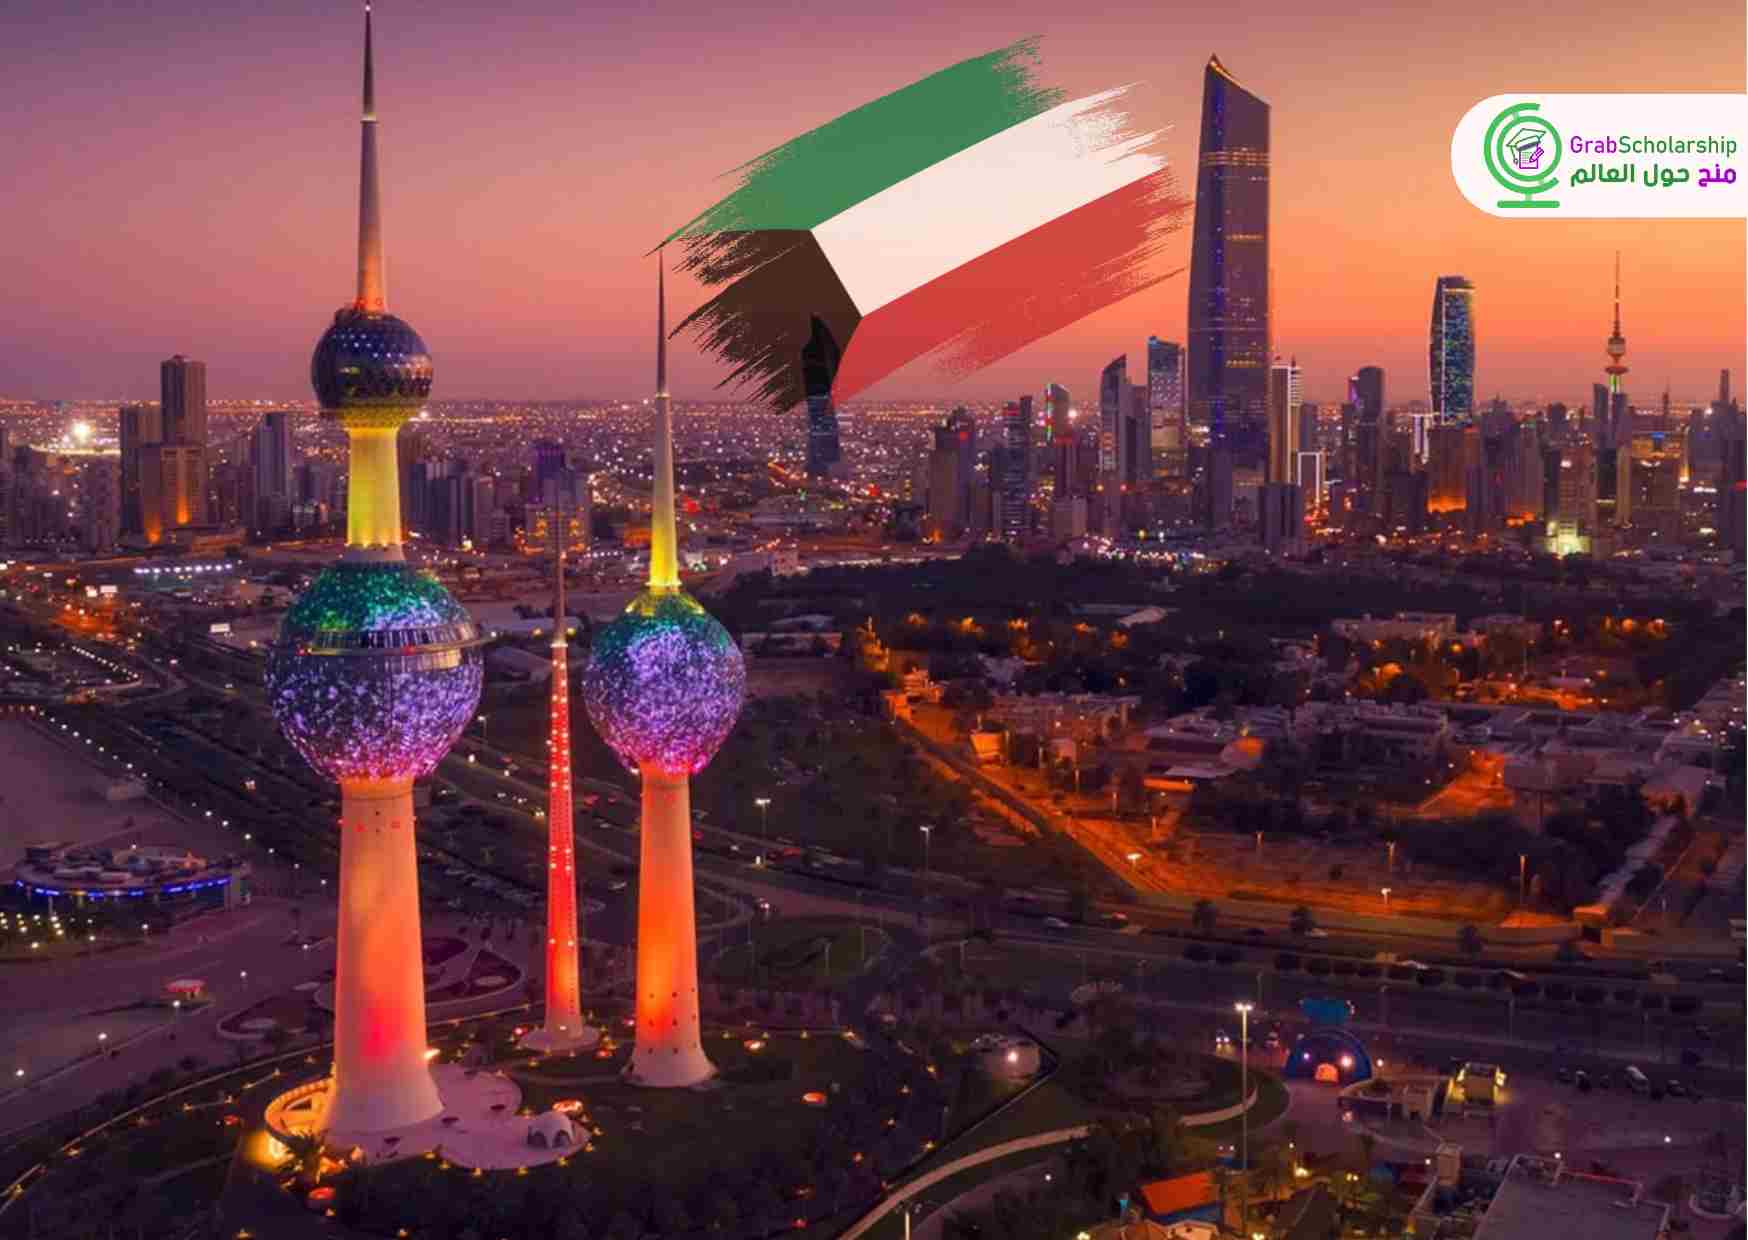 فرصة في الكويت للعمل براتب مميز مع توفير تأشيرة العمل